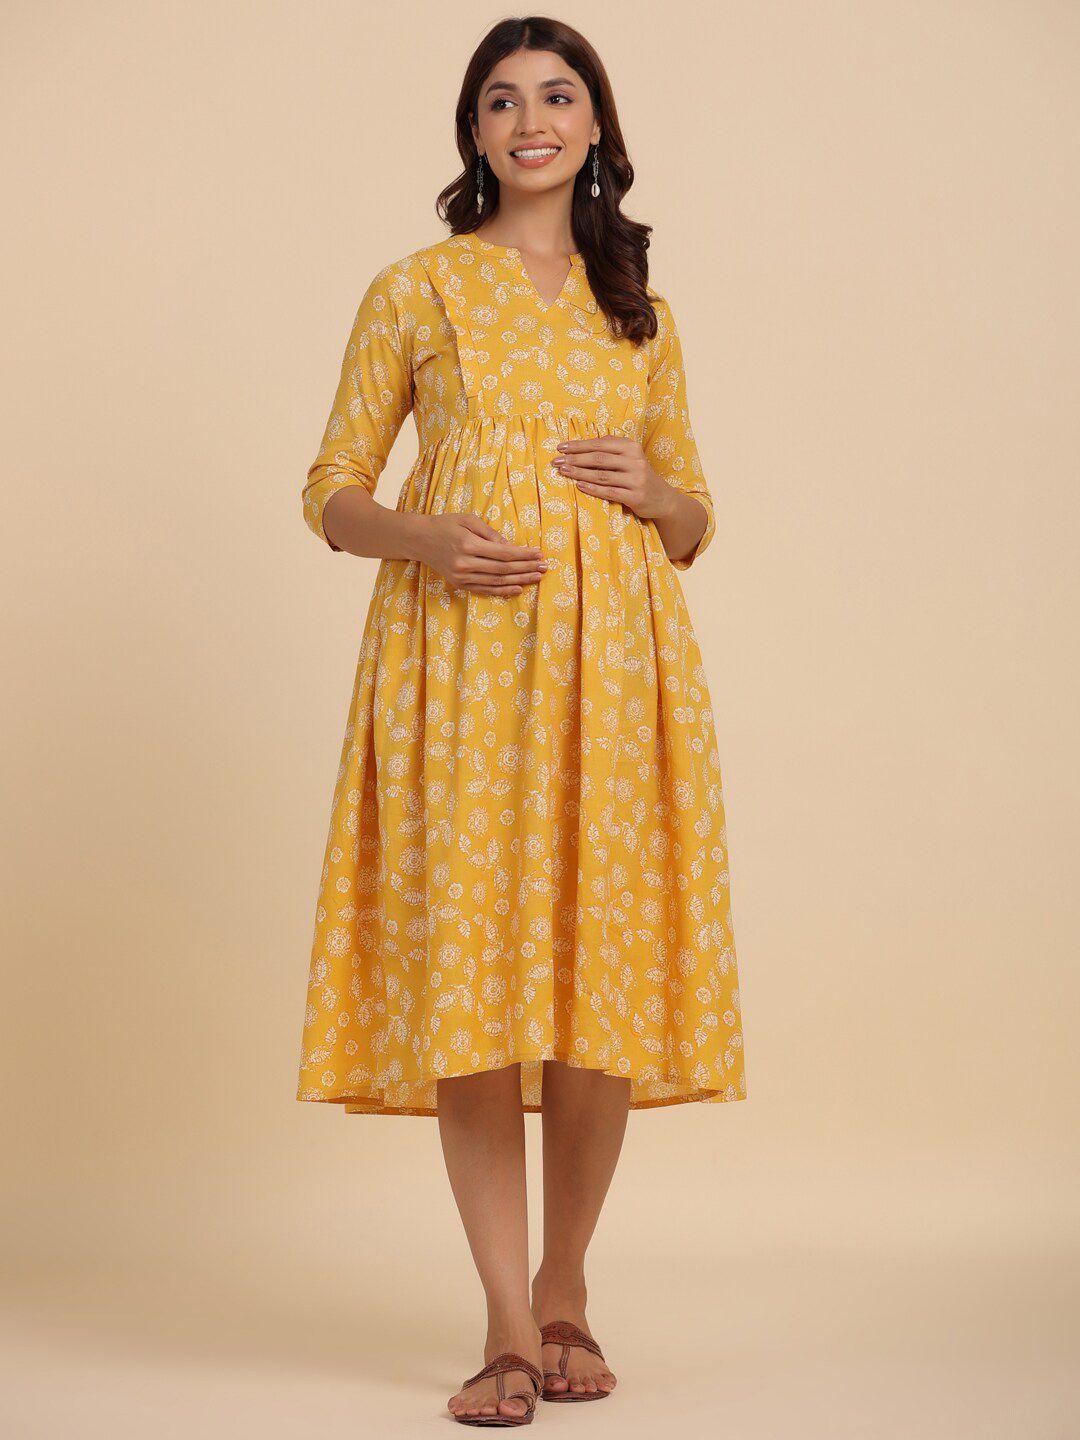 crafiqa mustard yellow floral print maternity fit & flare midi dress